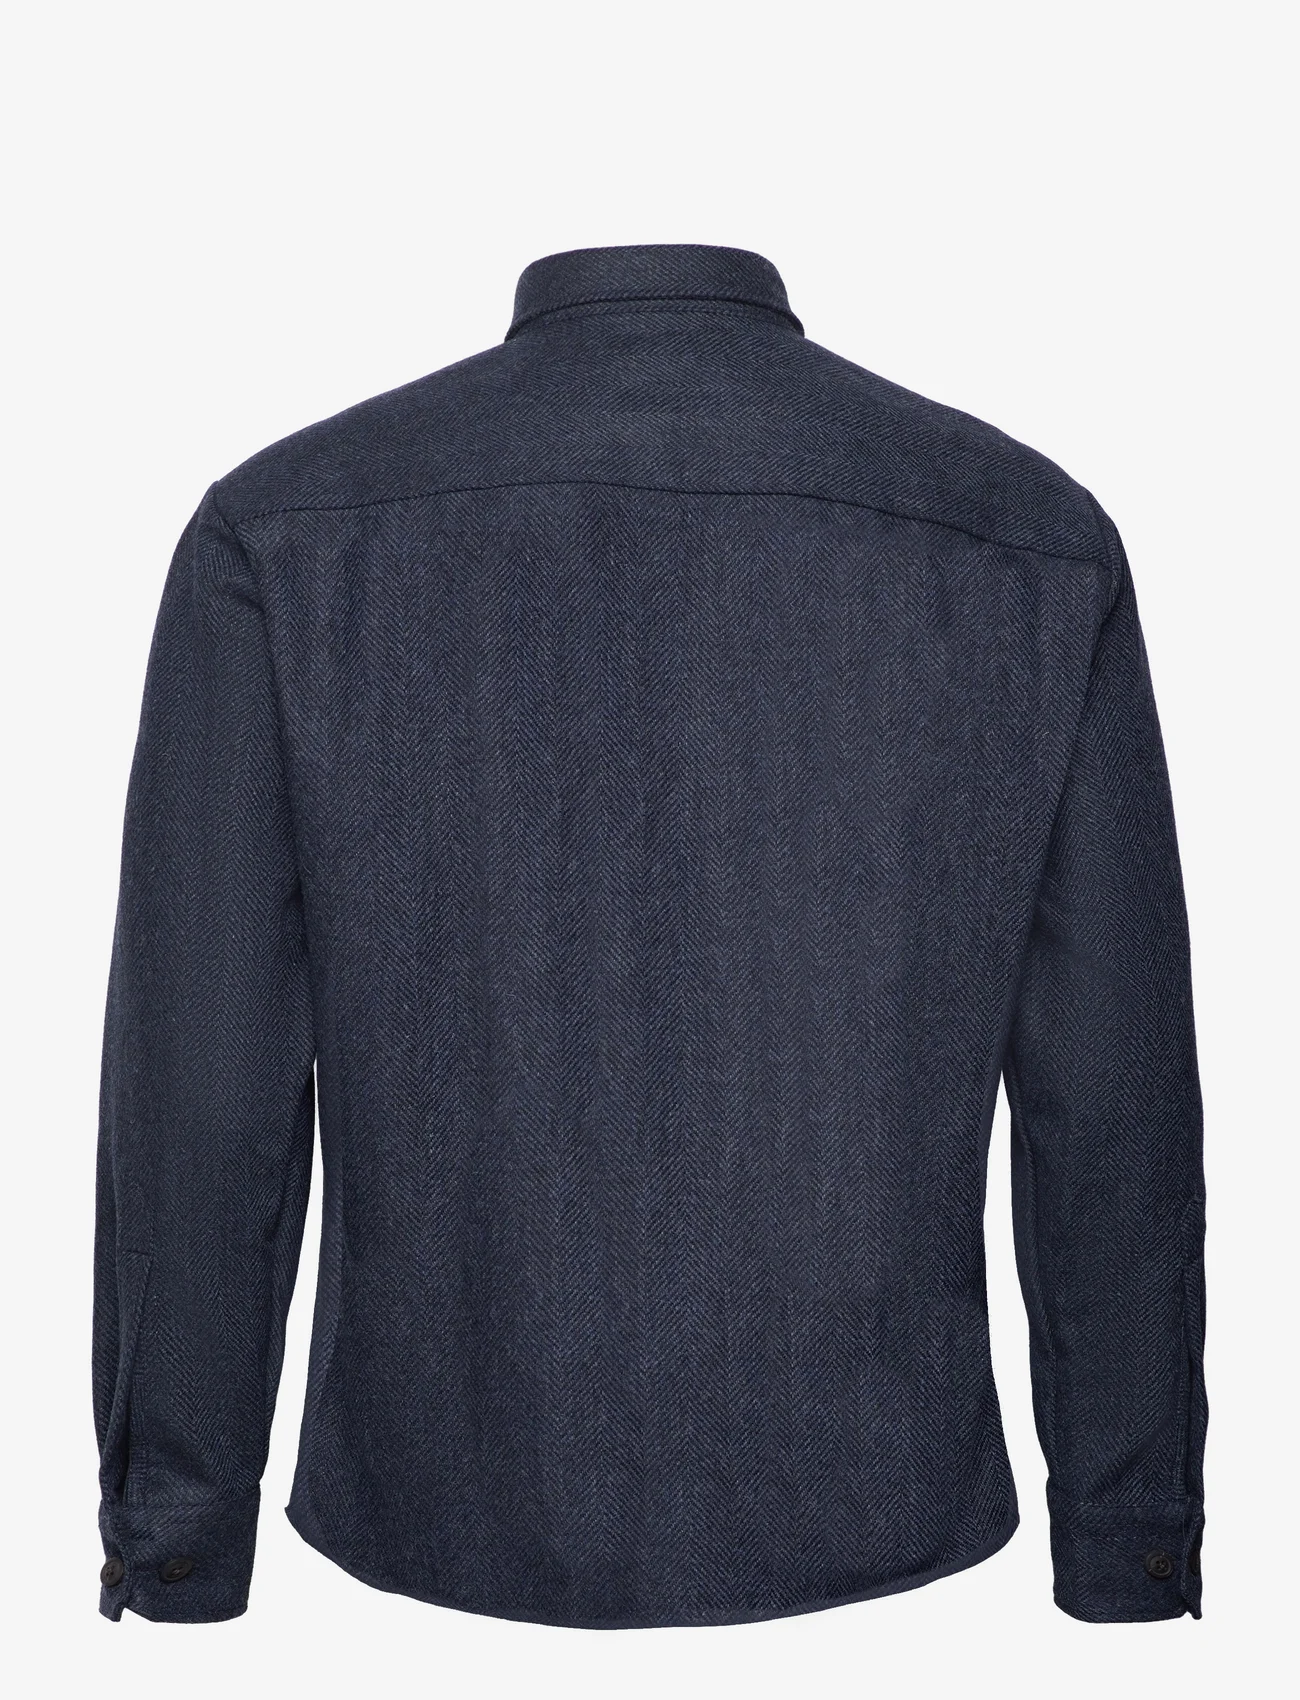 Bosweel Shirts Est. 1937 - Over Shirt - mænd - dark blue - 1